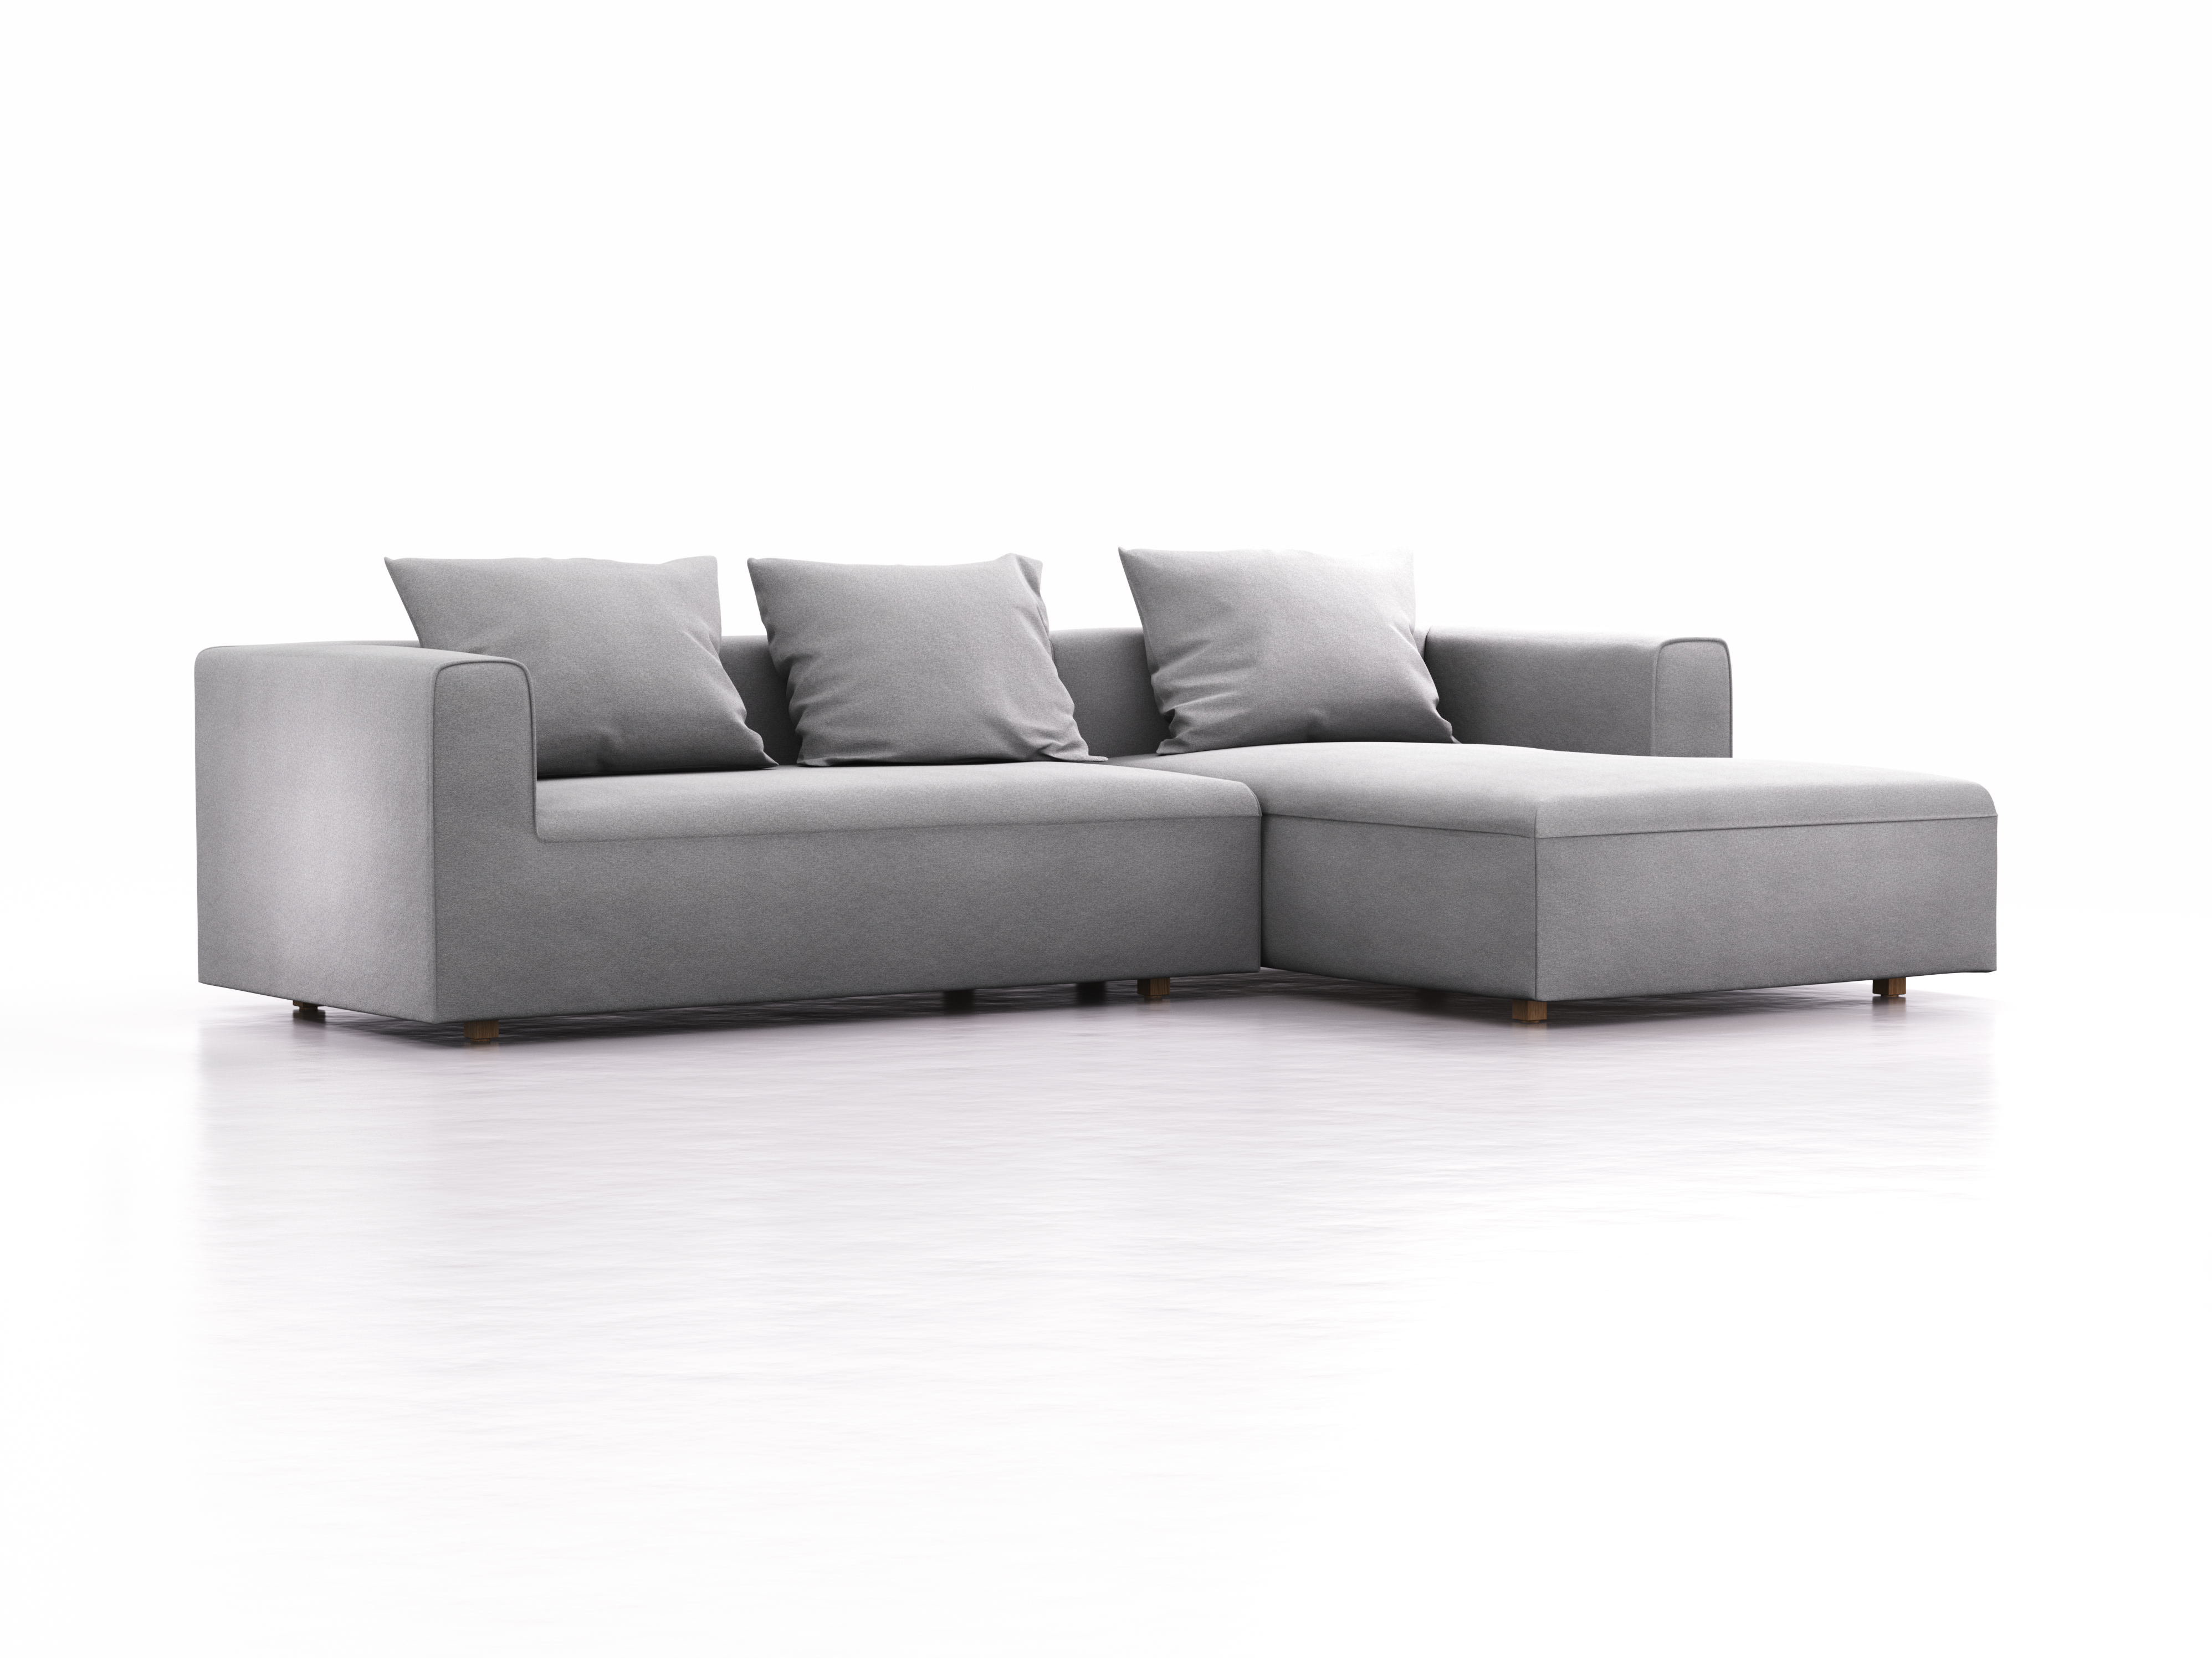 Lounge-Sofa Sereno, bodennah, B297xT180xH71 cm, Sitzhöhe 43 cm, mit Liegeteil rechts inkl. 3 Kissen (70x55 cm), Eiche, Wollstoff Stavang Kiesel